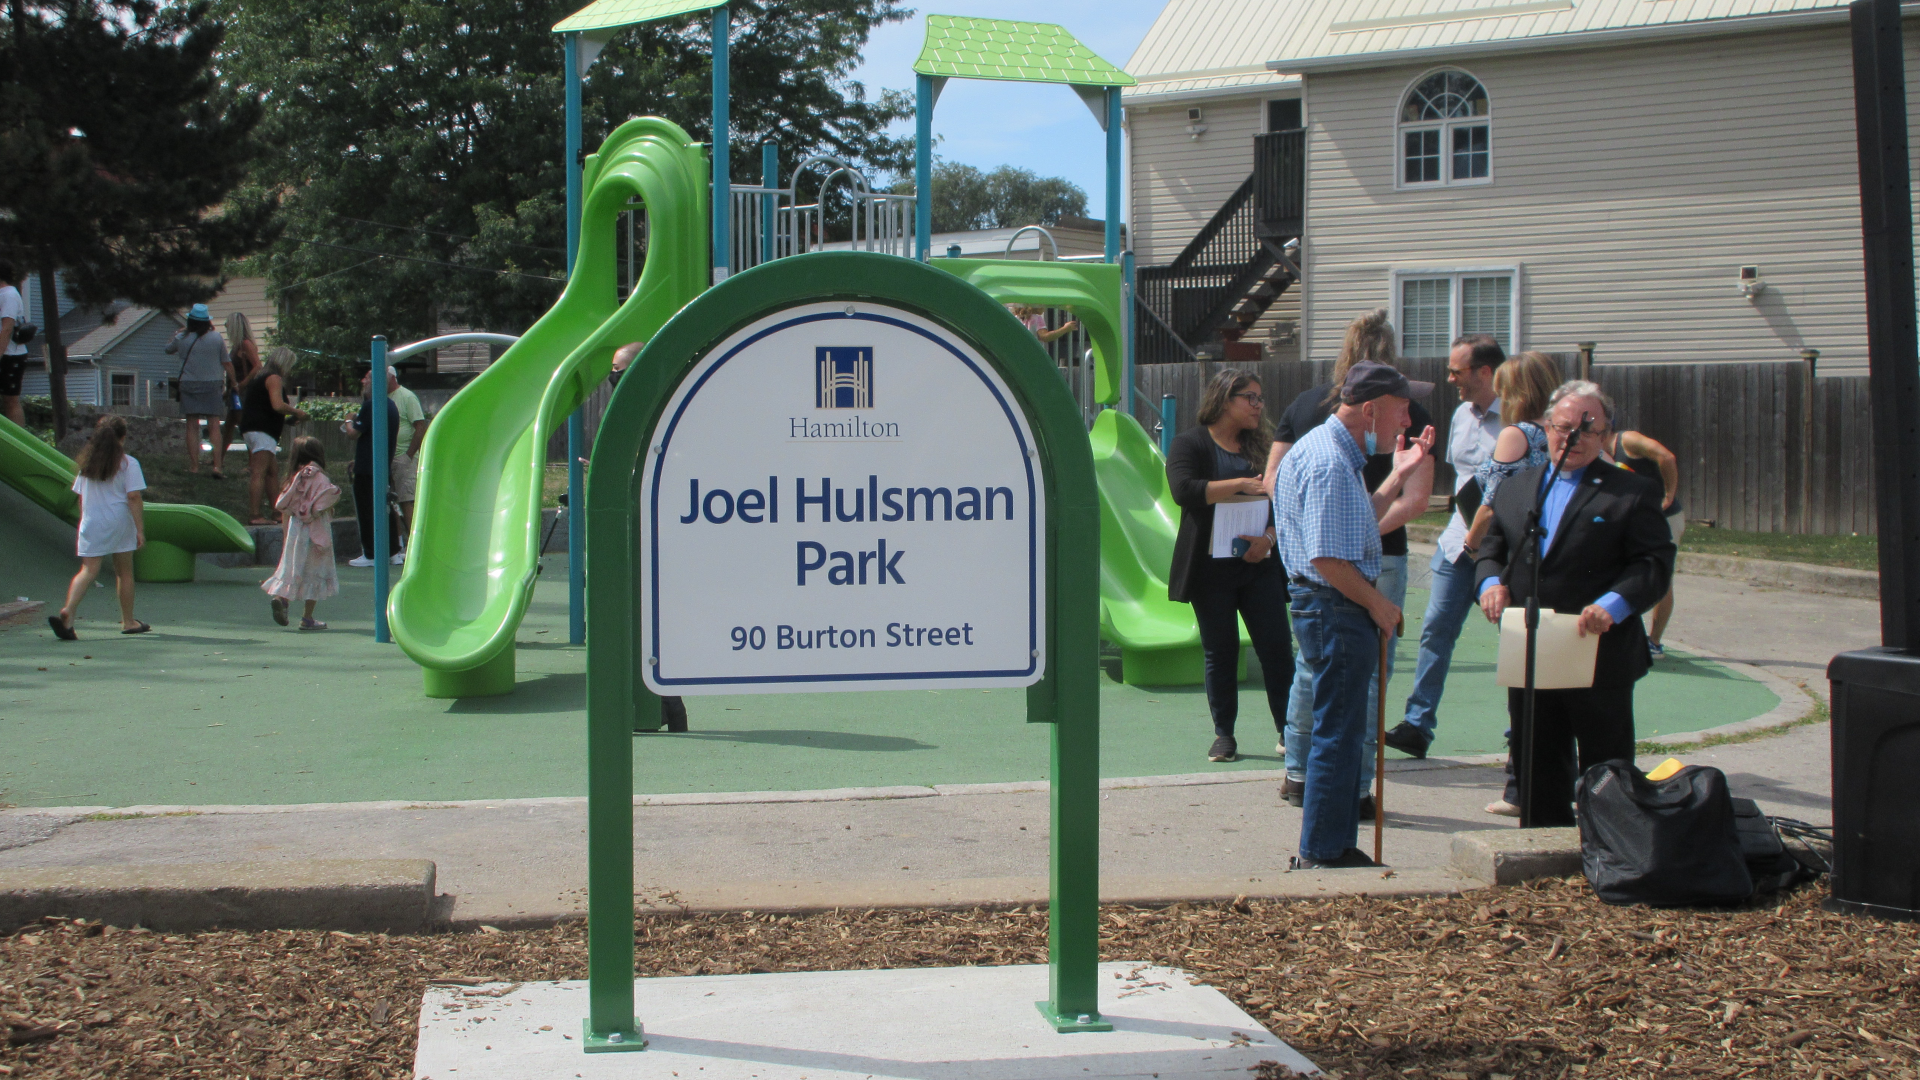 Park named after former Kenesky Sports owner, Joel Hulsman